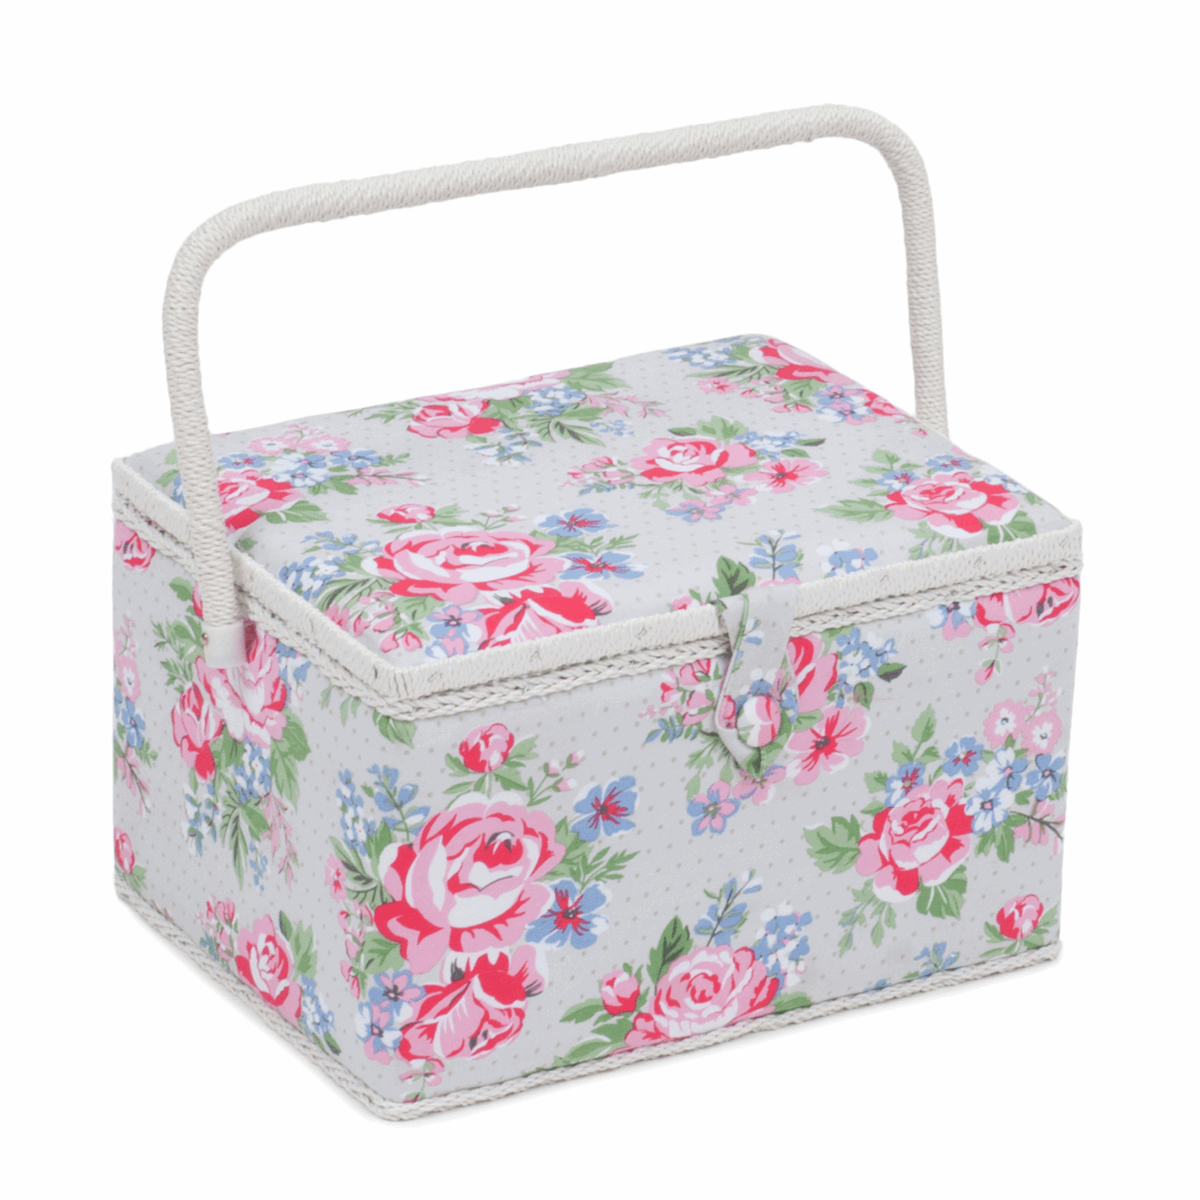 Rose Sewing Box - Large